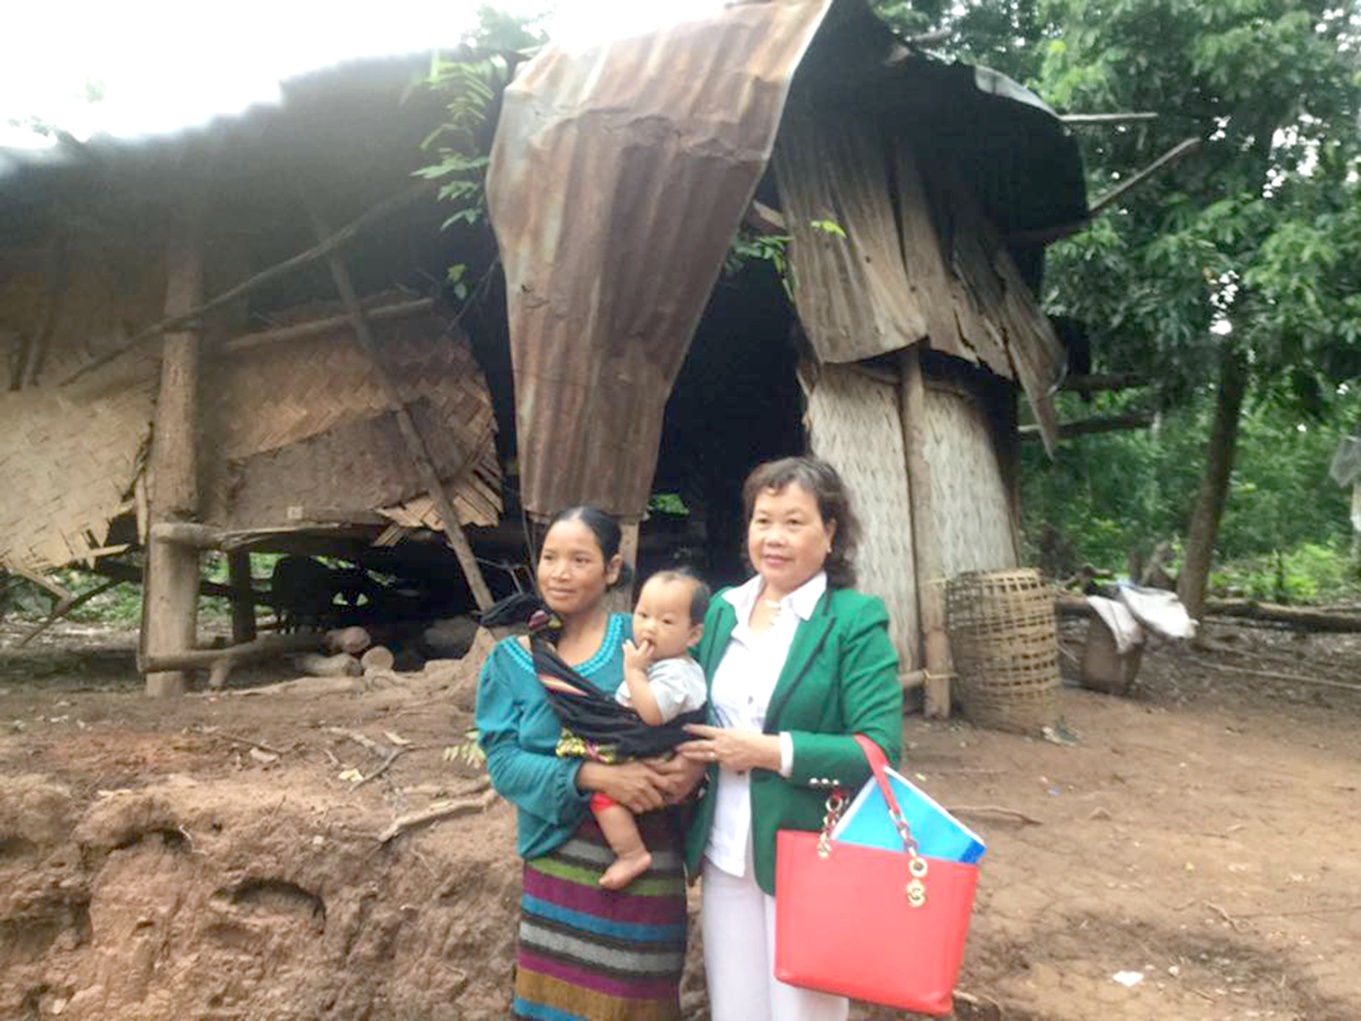 Cô Nguyễn Thị Hồng Vân (phải) trong một chuyến khảo sát hỗ trợ học trò nghèo ở miền núi Quảng Trị